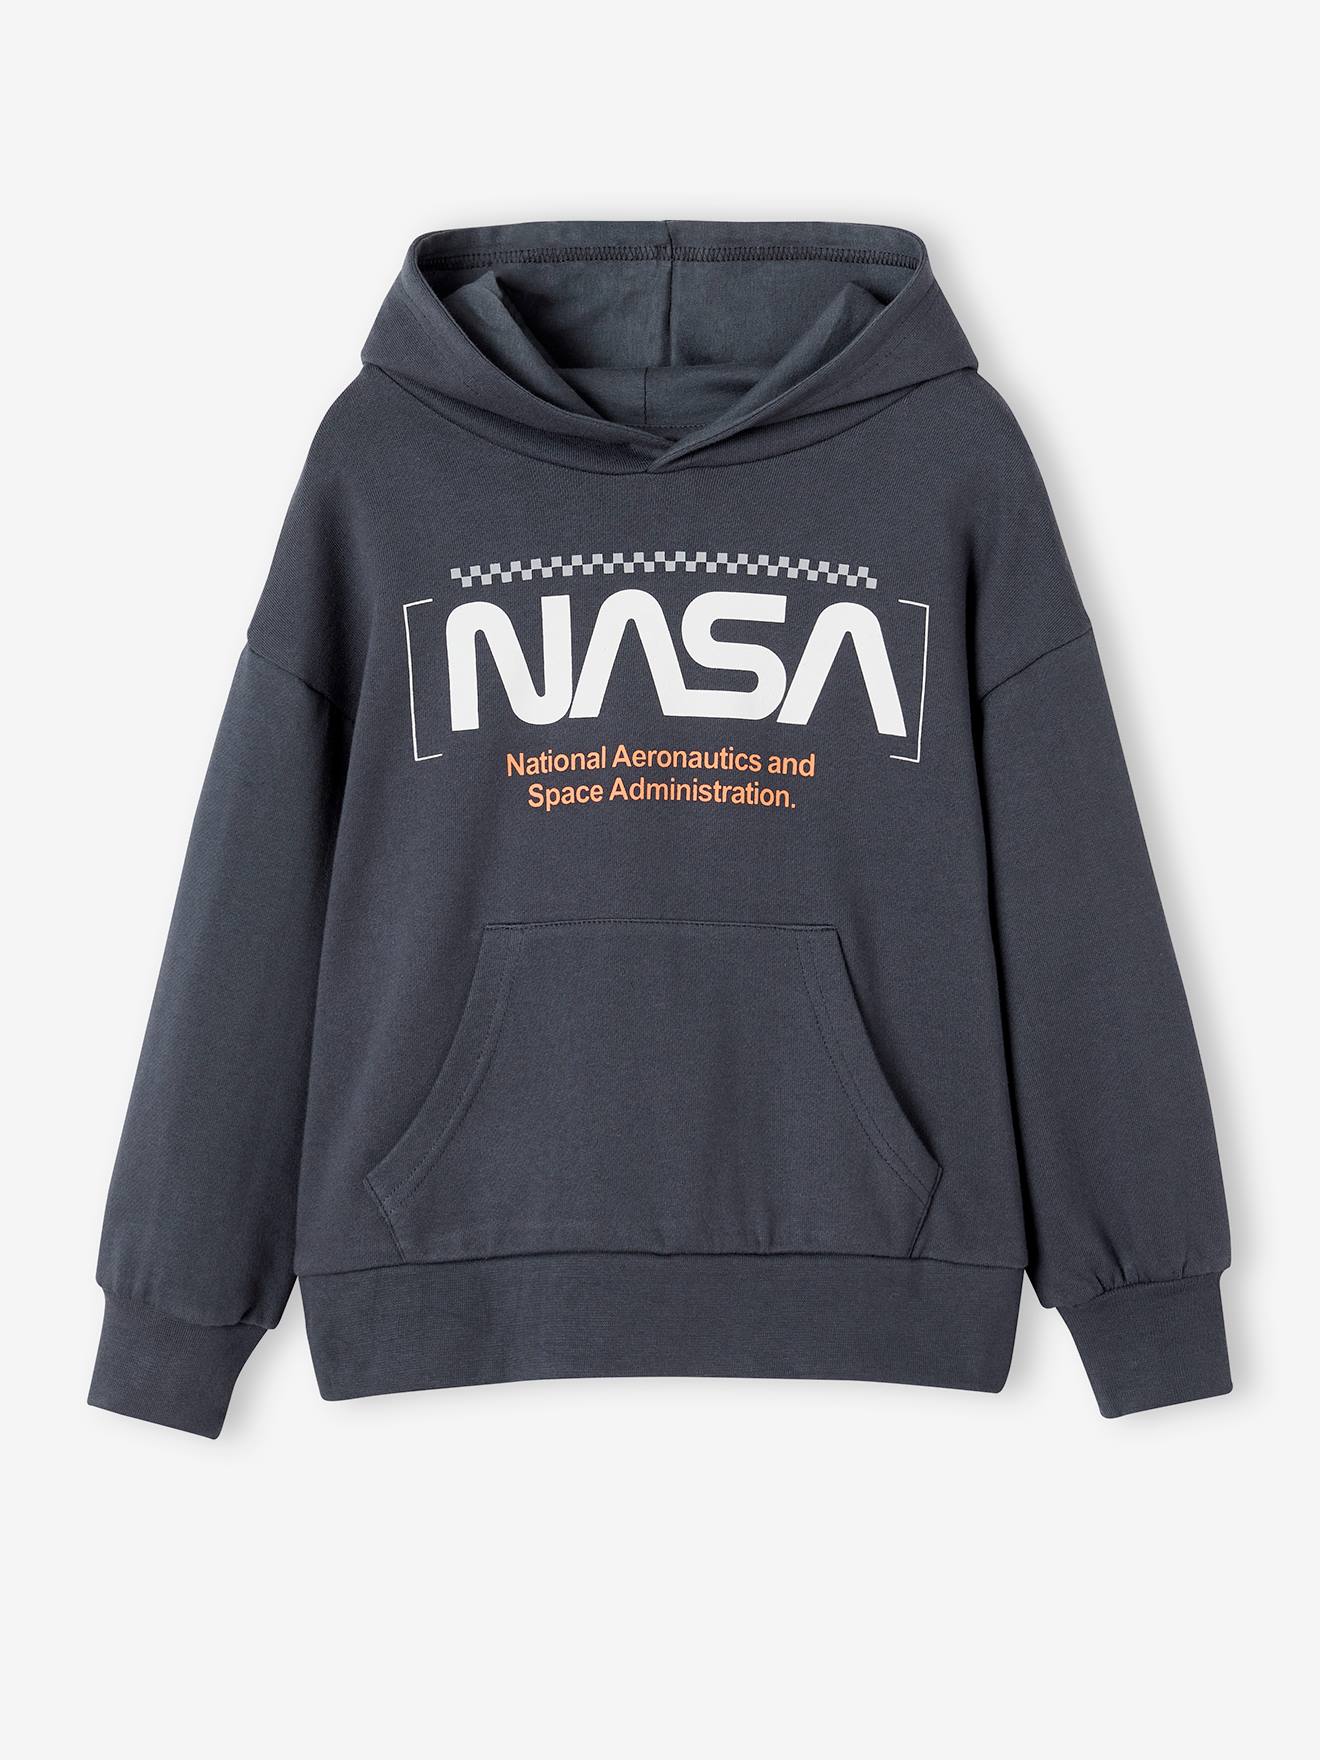 Kinder Kapuzensweatshirt NASA von NASA